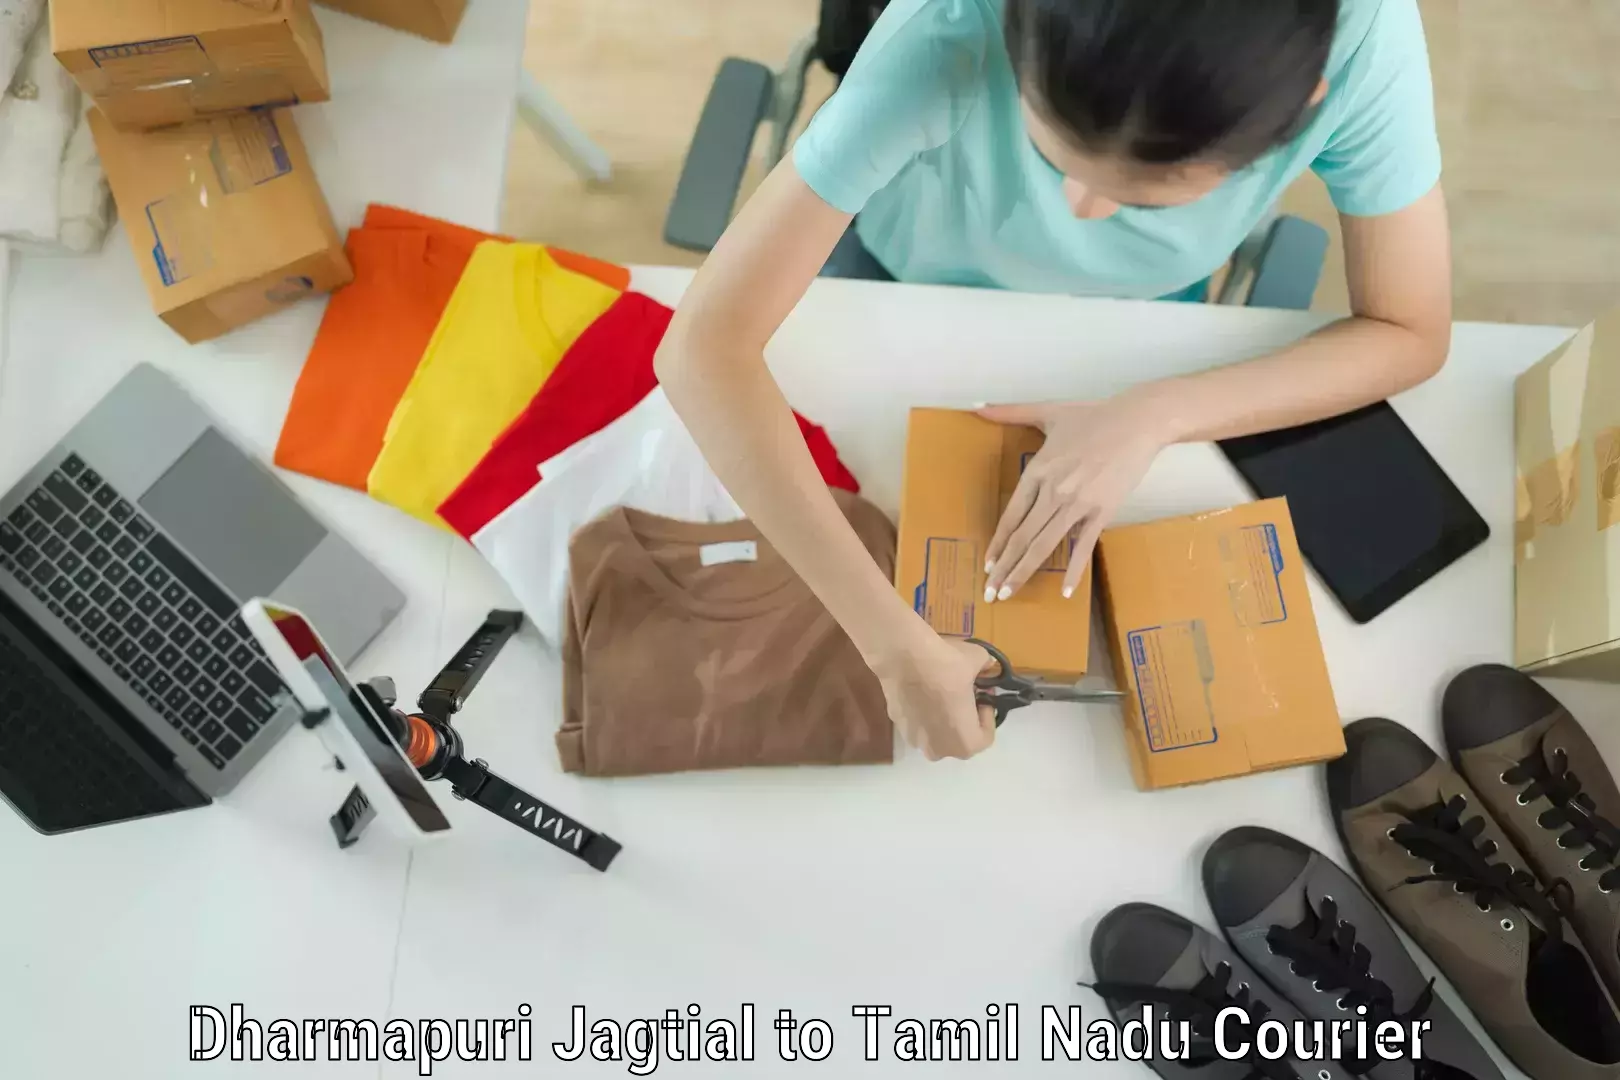 Baggage delivery management Dharmapuri Jagtial to Tamil Nadu